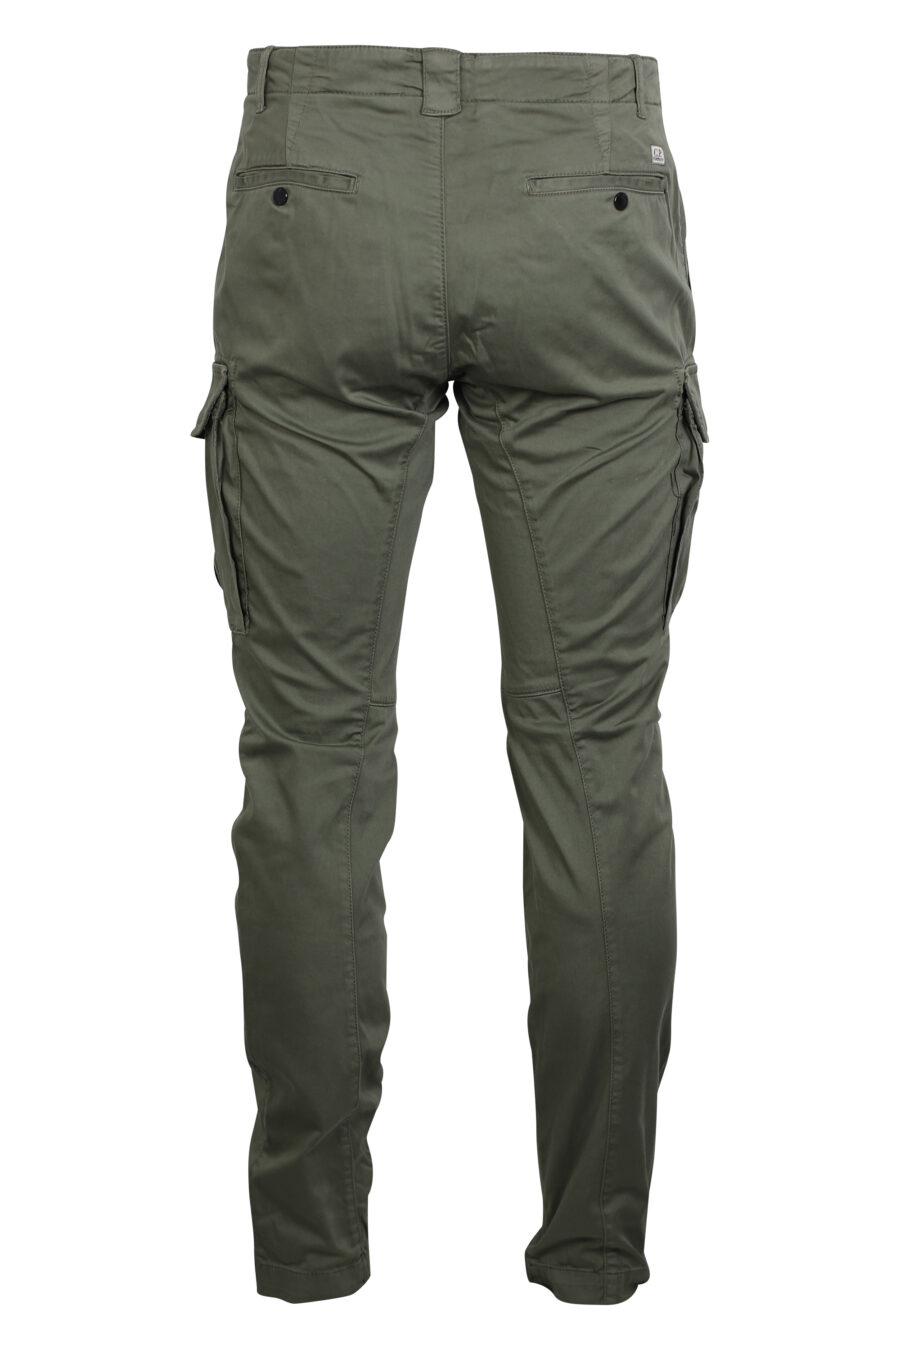 Pantalón verde militar cargo con minilogo circular - IMG 2486